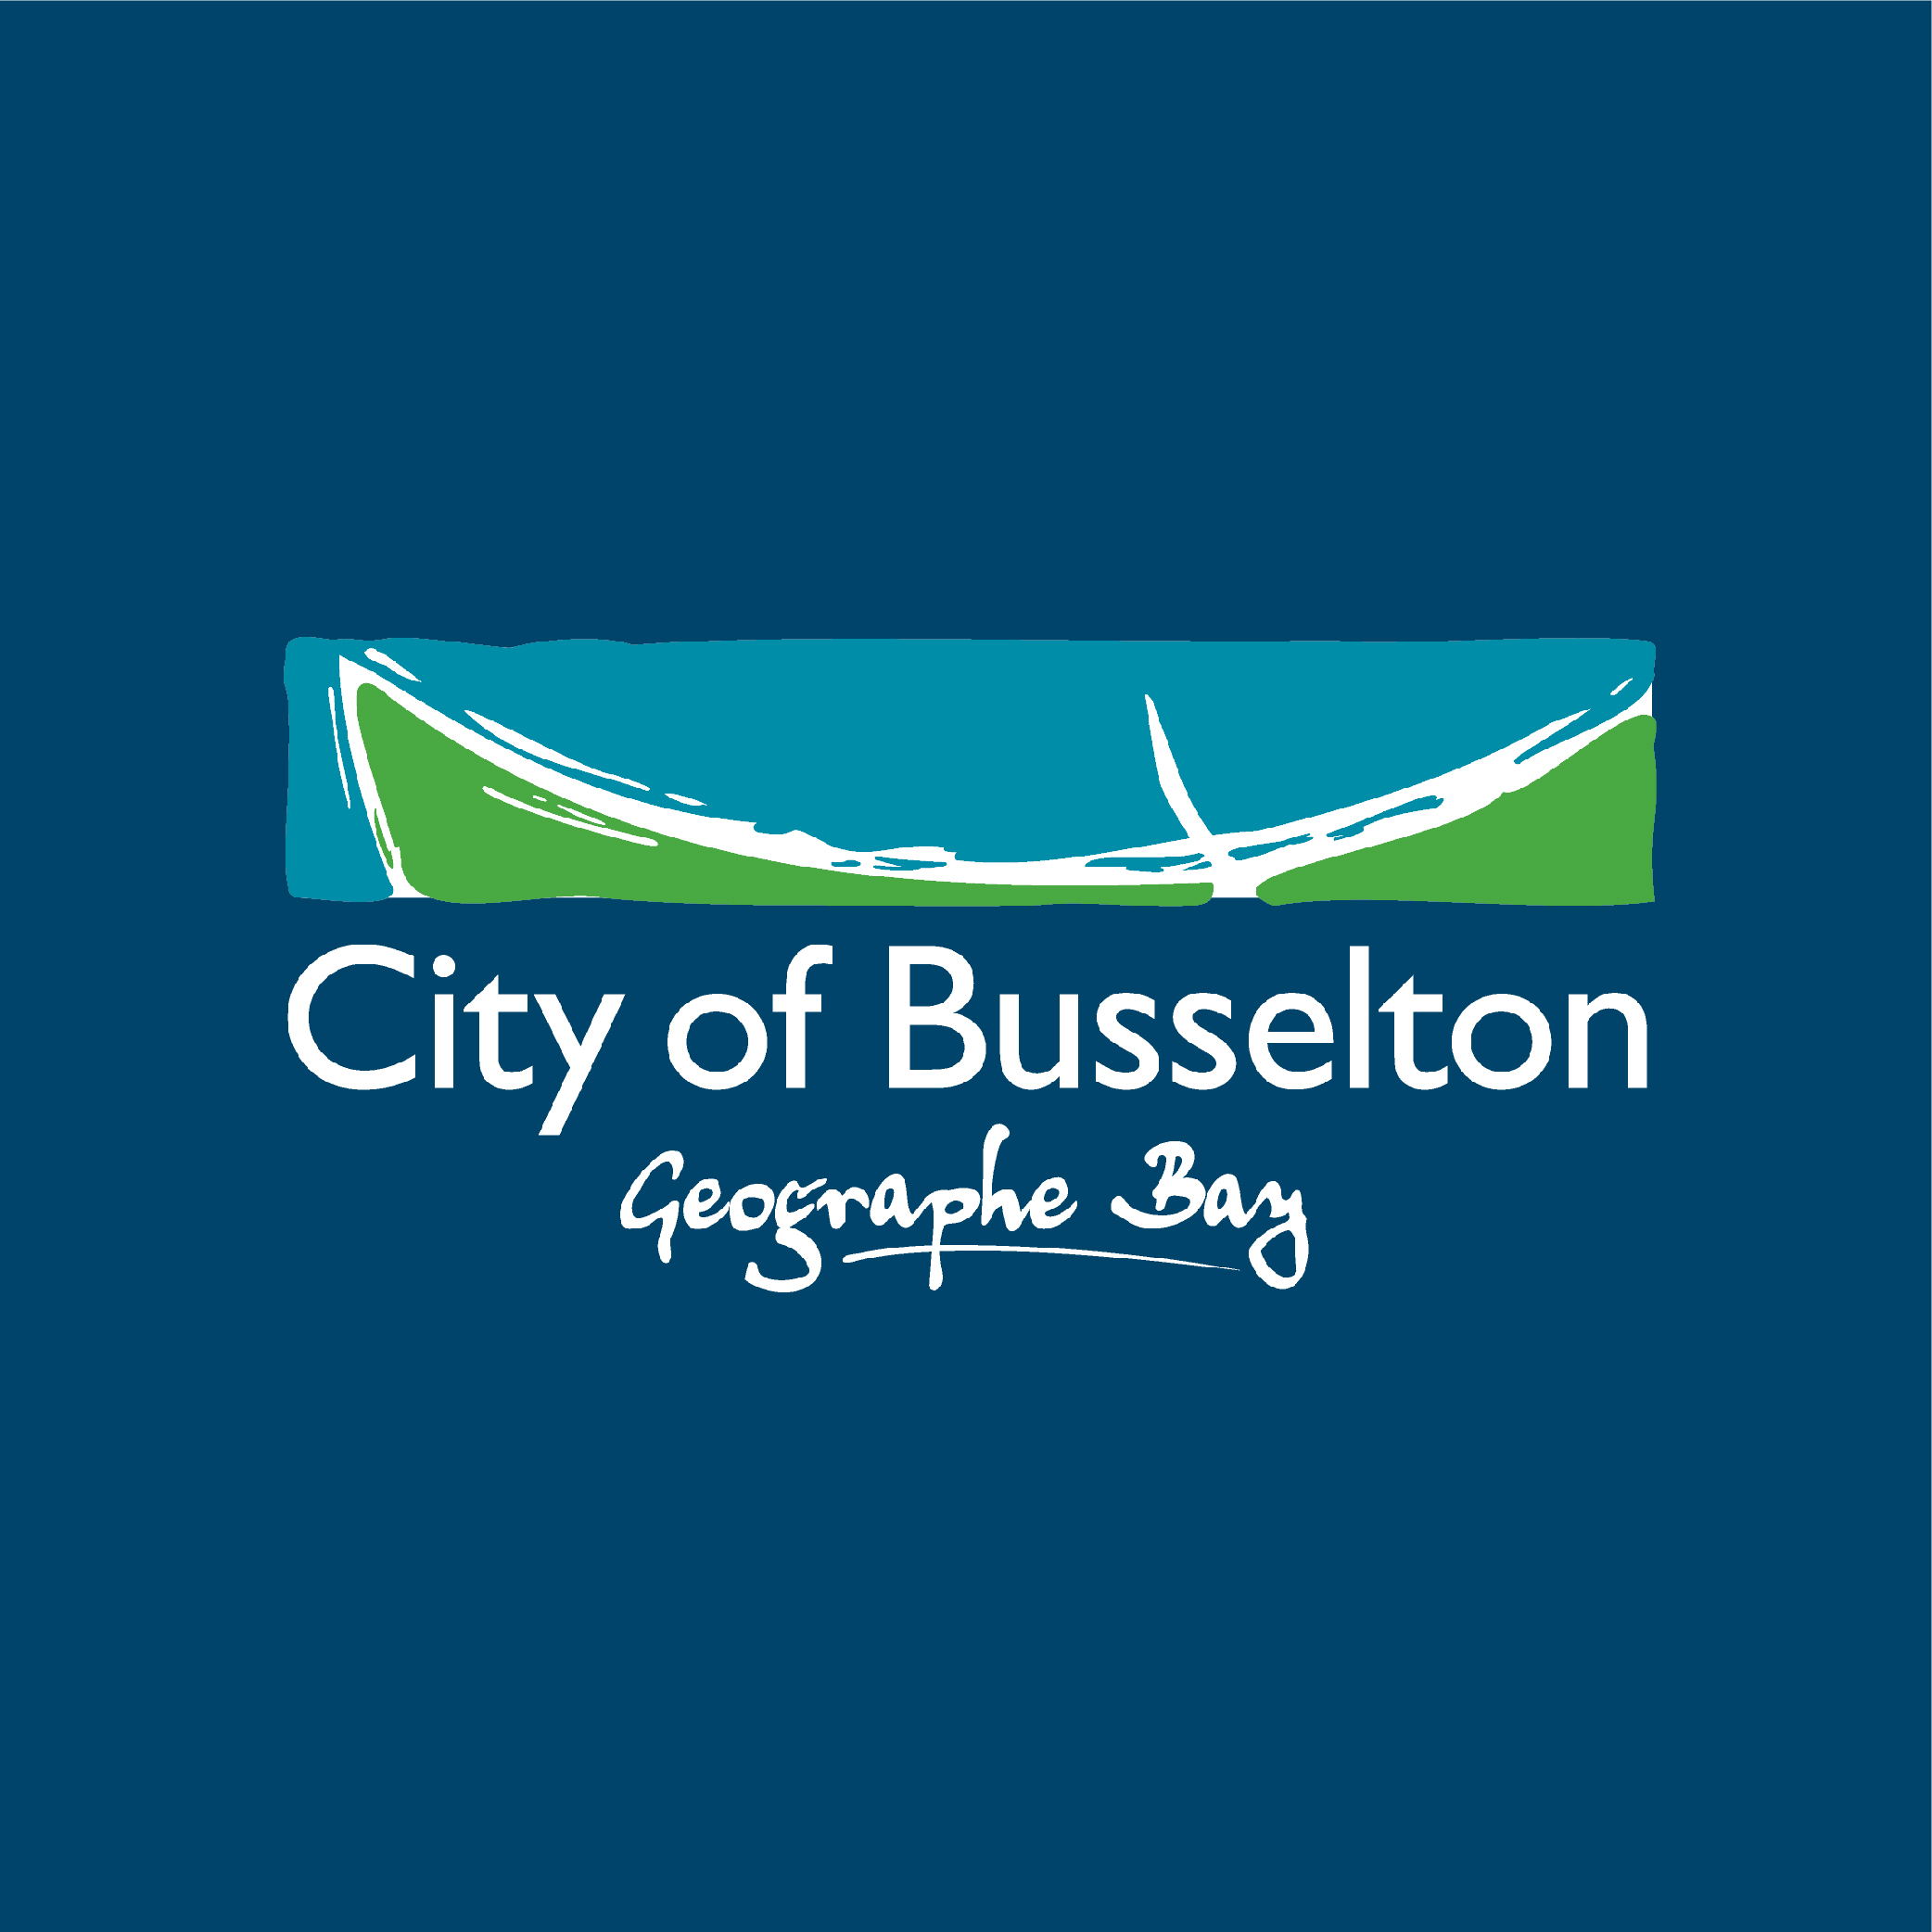 Busselton Council